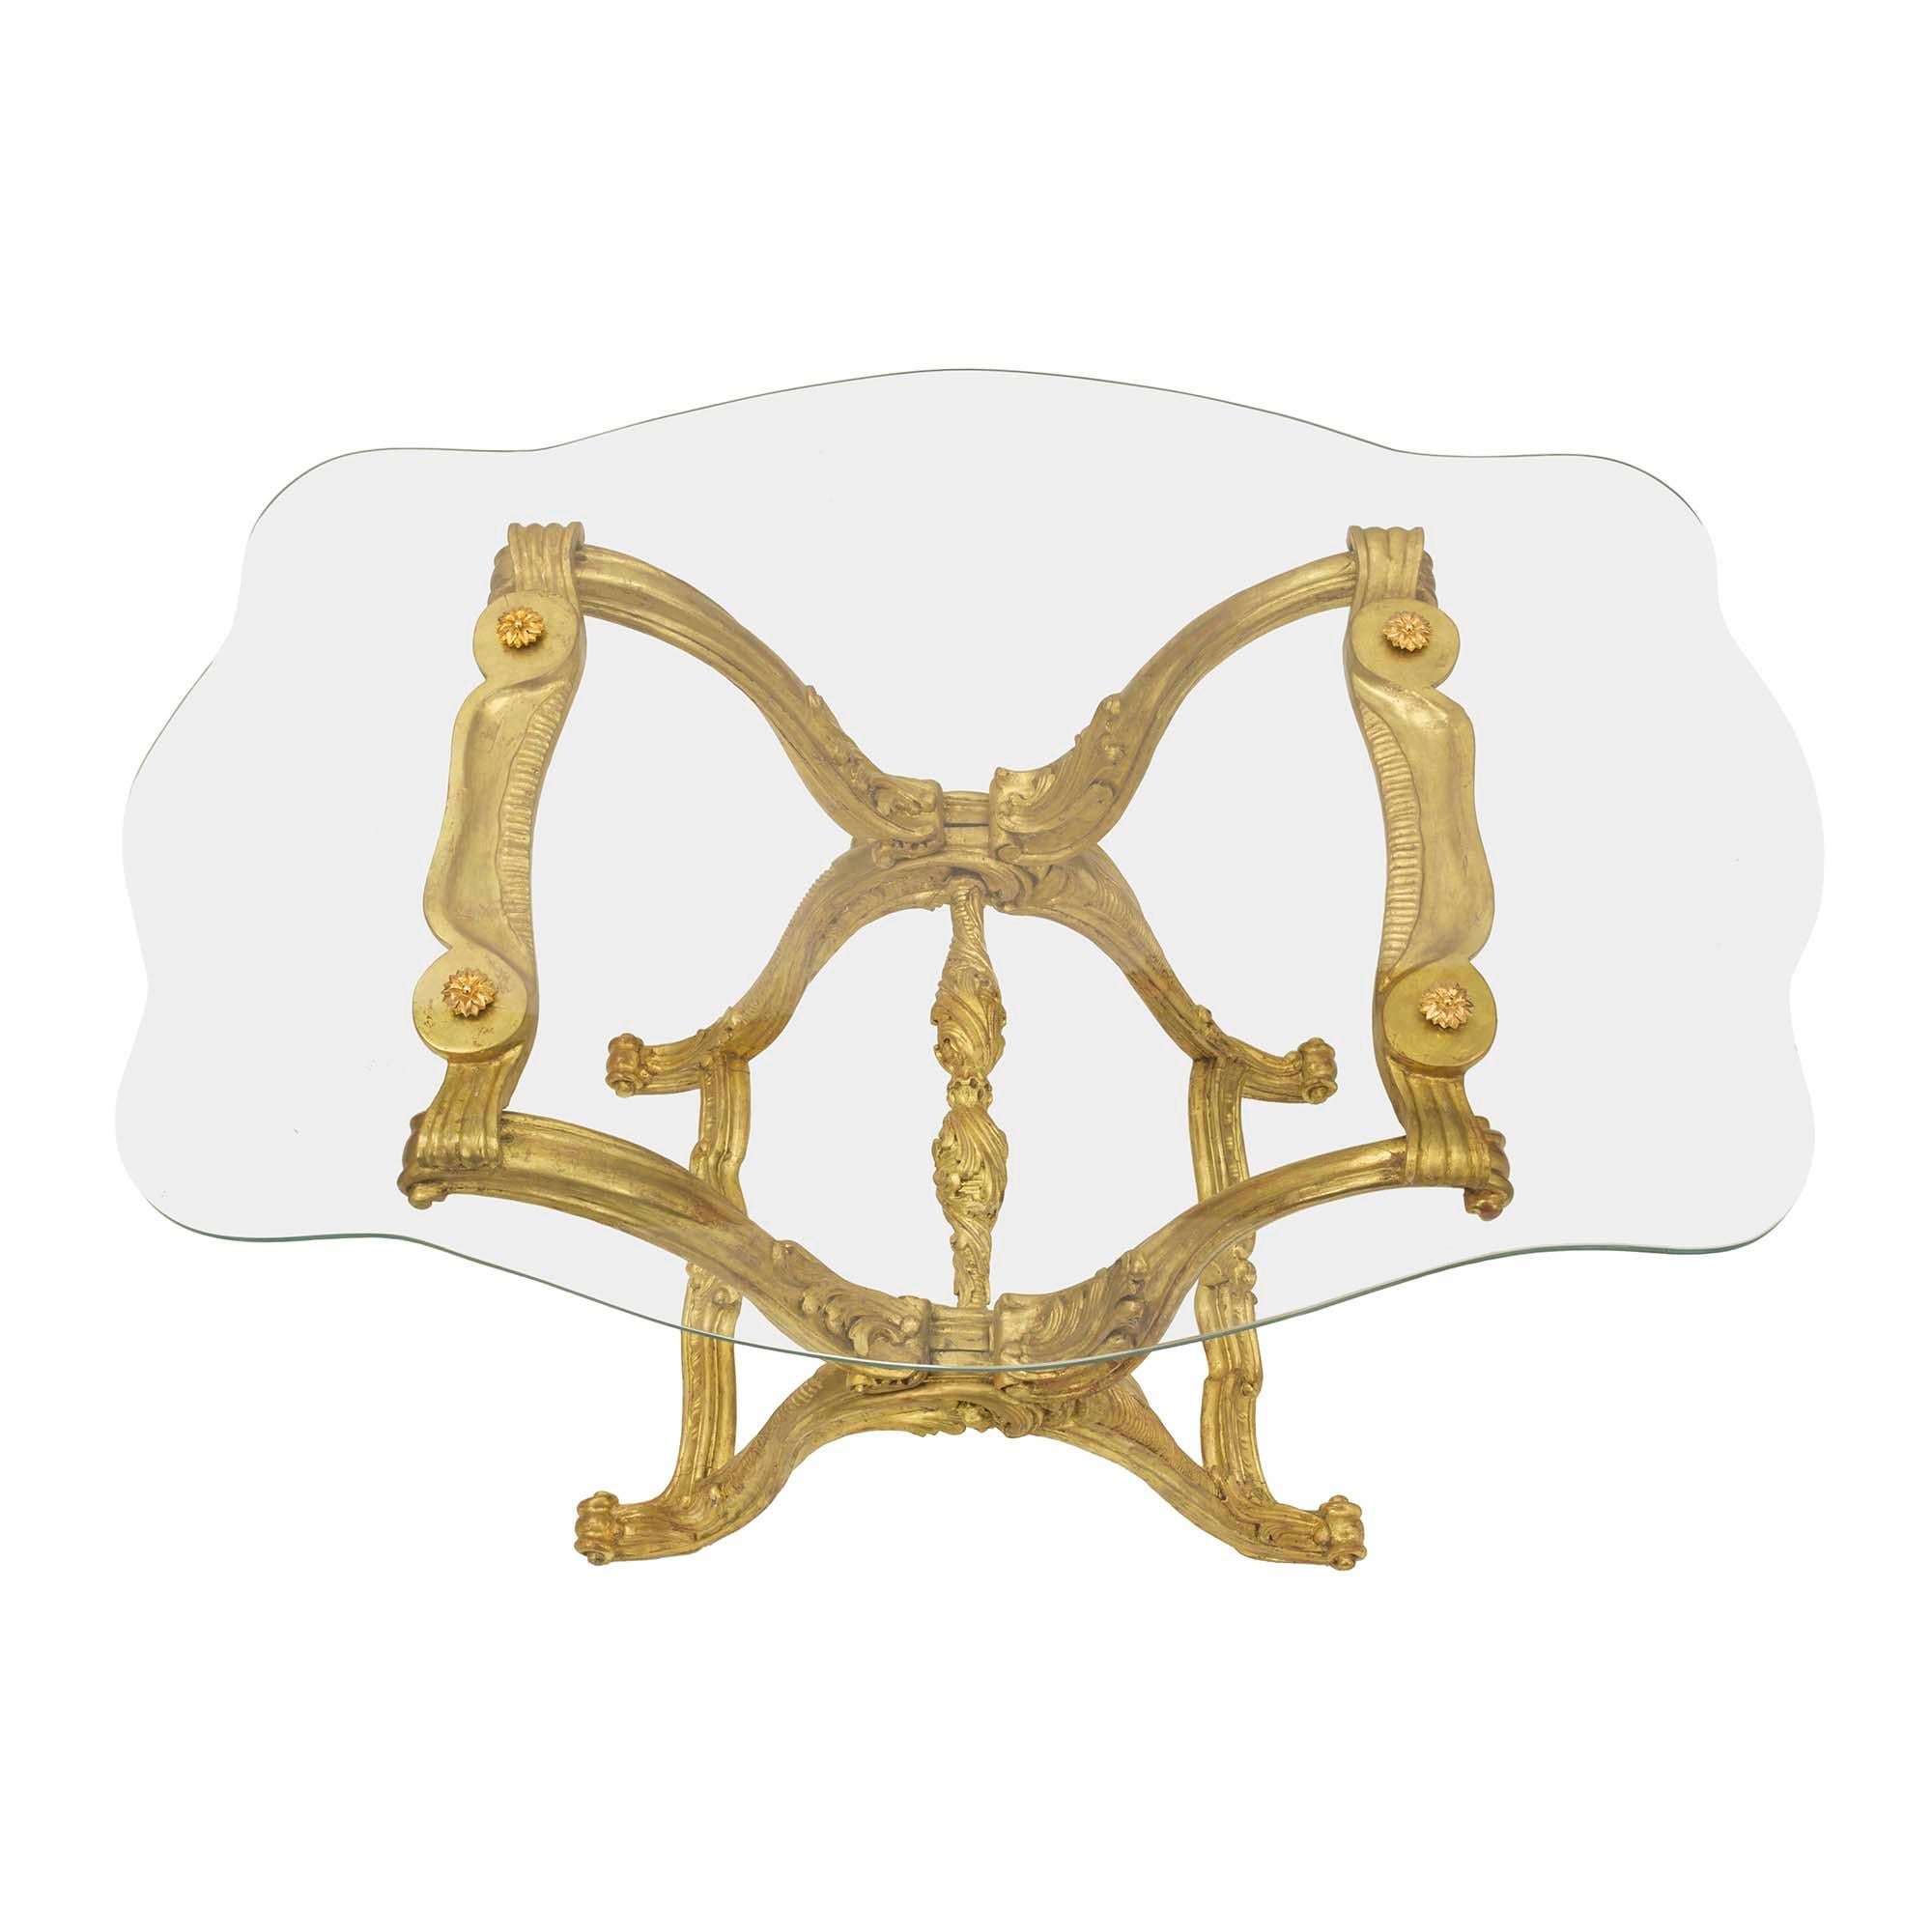 Ein sehr dekorativer und einzigartiger italienischer Cocktailtisch im Barockstil des 19. Jahrhunderts aus Goldholz und Glas. Der Tisch wird von reich geschnitzten X-förmigen Stützen mit auffallend geschwungenen Bewegungen und detailliert